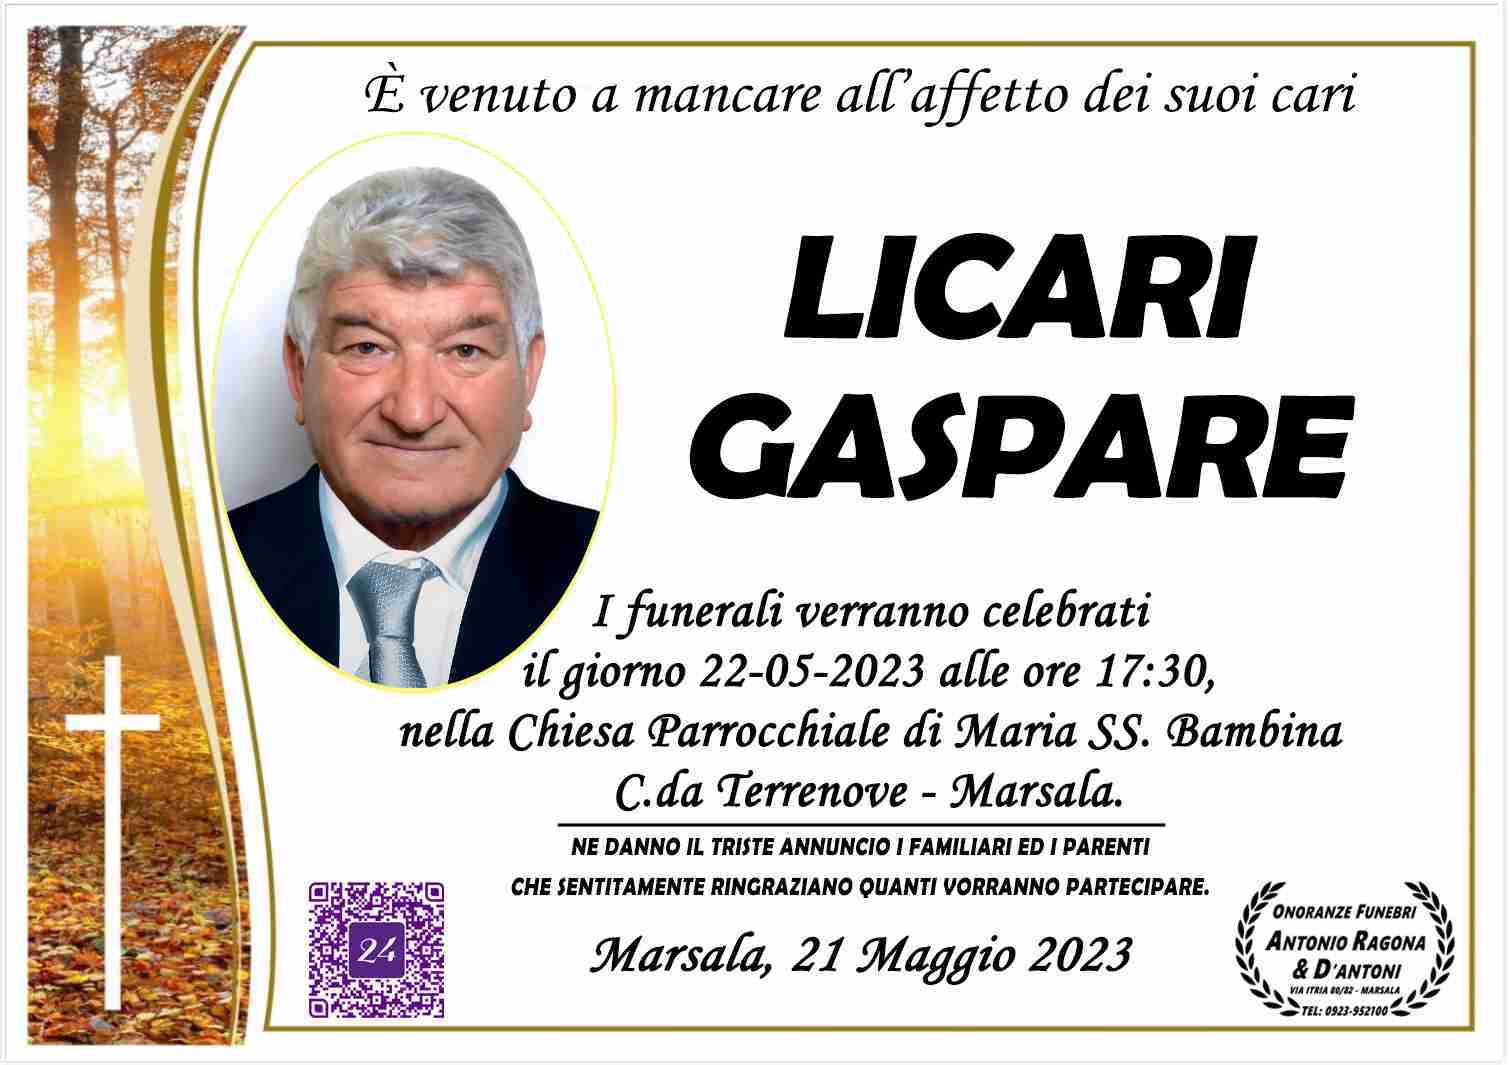 Gaspare Licari